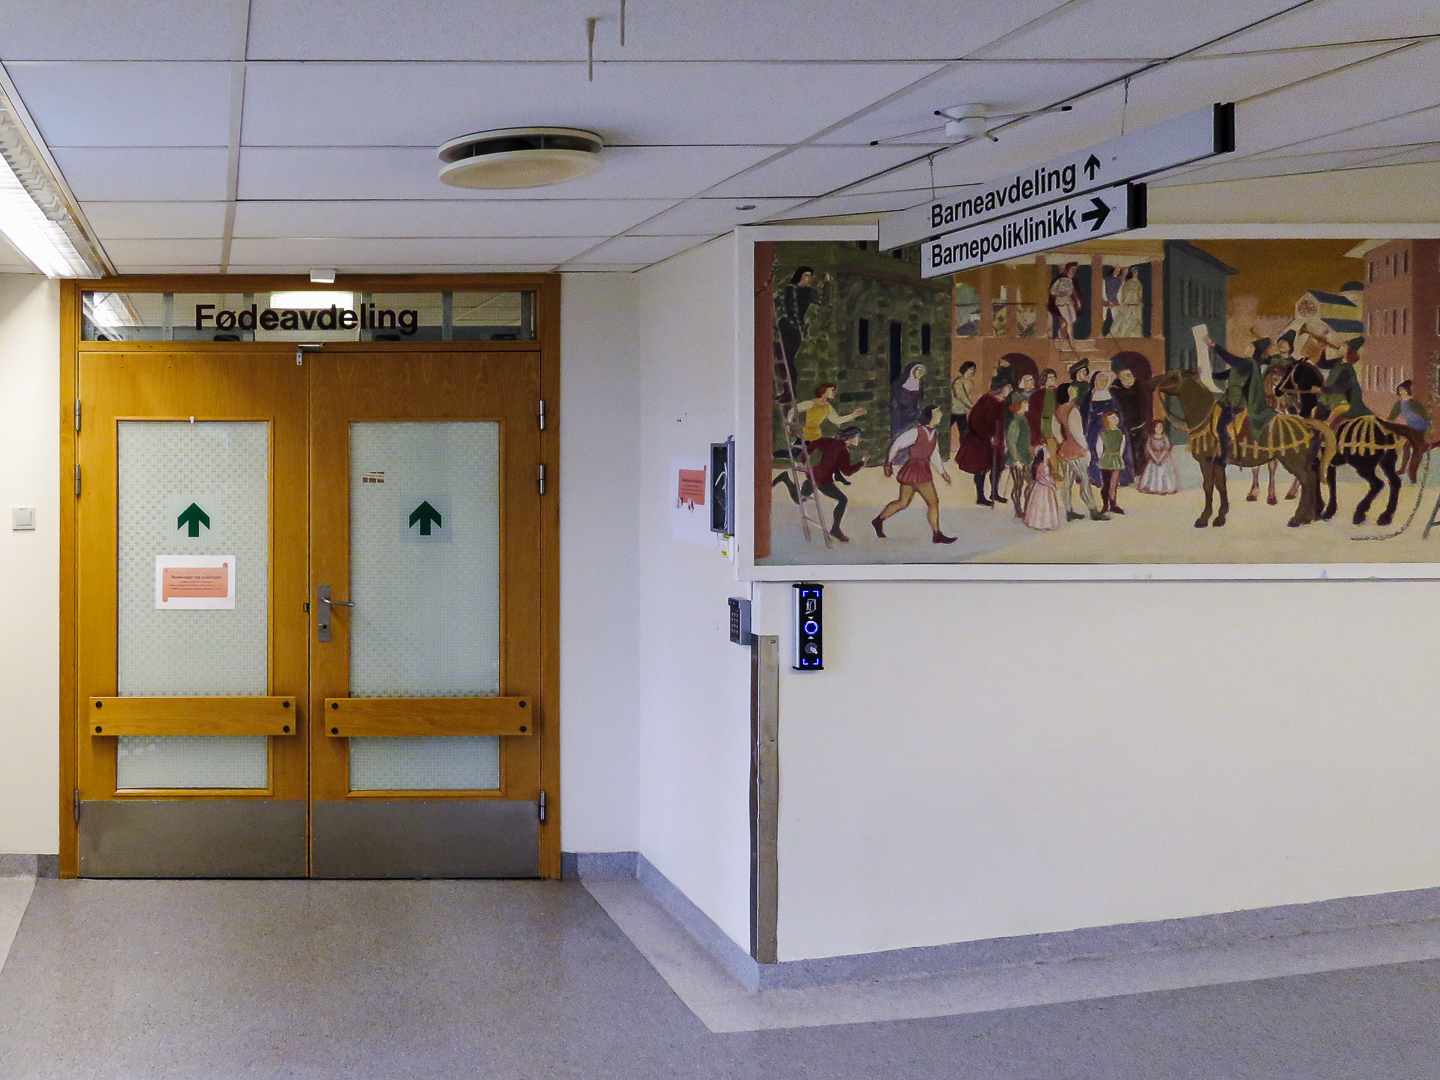 Stengt fødeavdeling på Kristiansund sykehus. Foto: Steinar Melby / KSU.NO